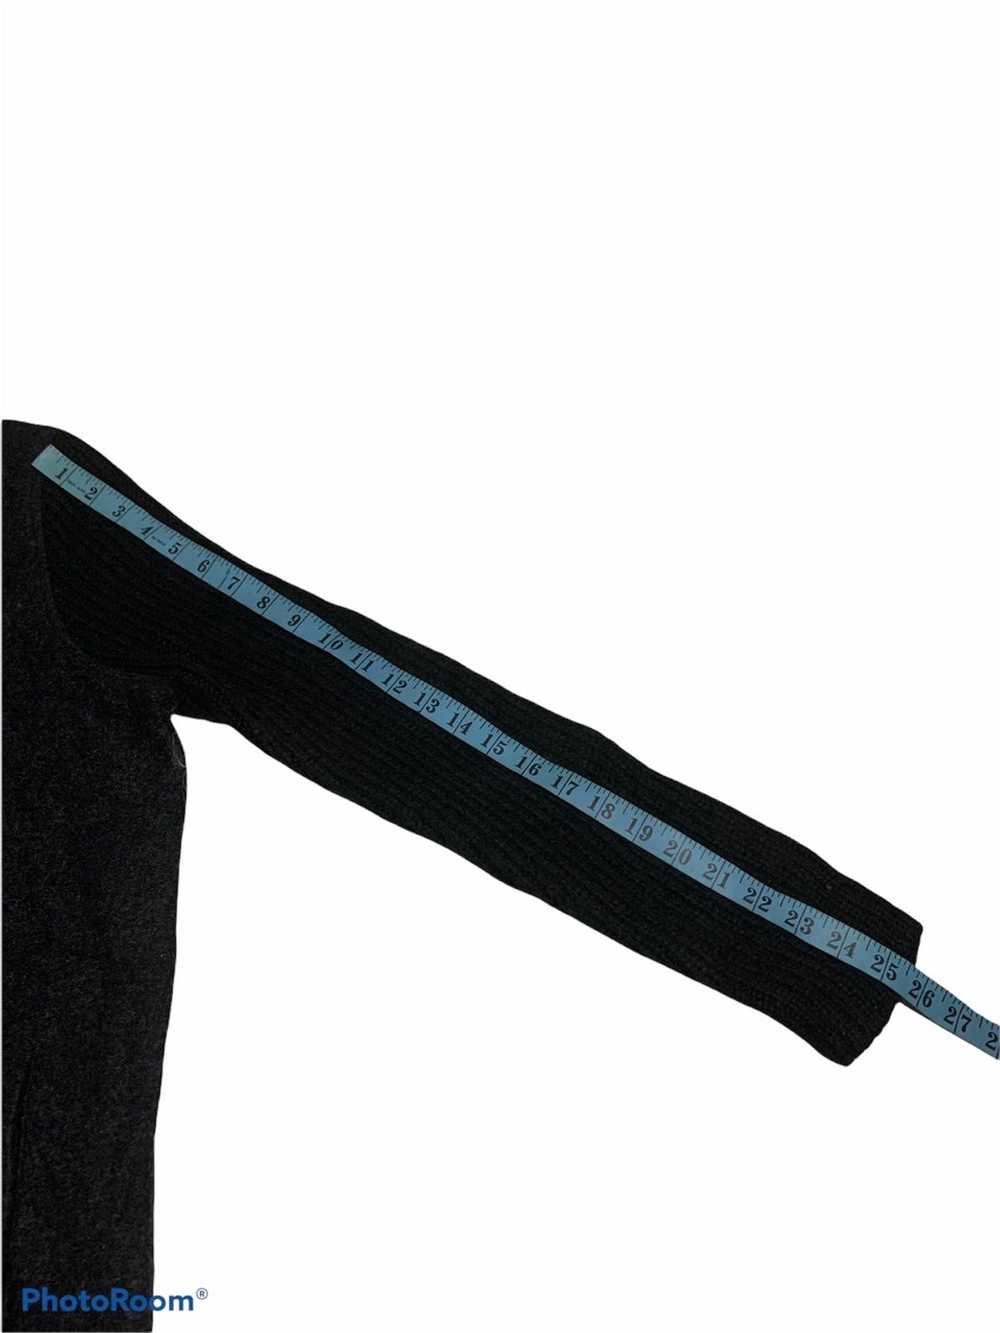 Zara Zara Rare Design Wool Long Jacket - image 12